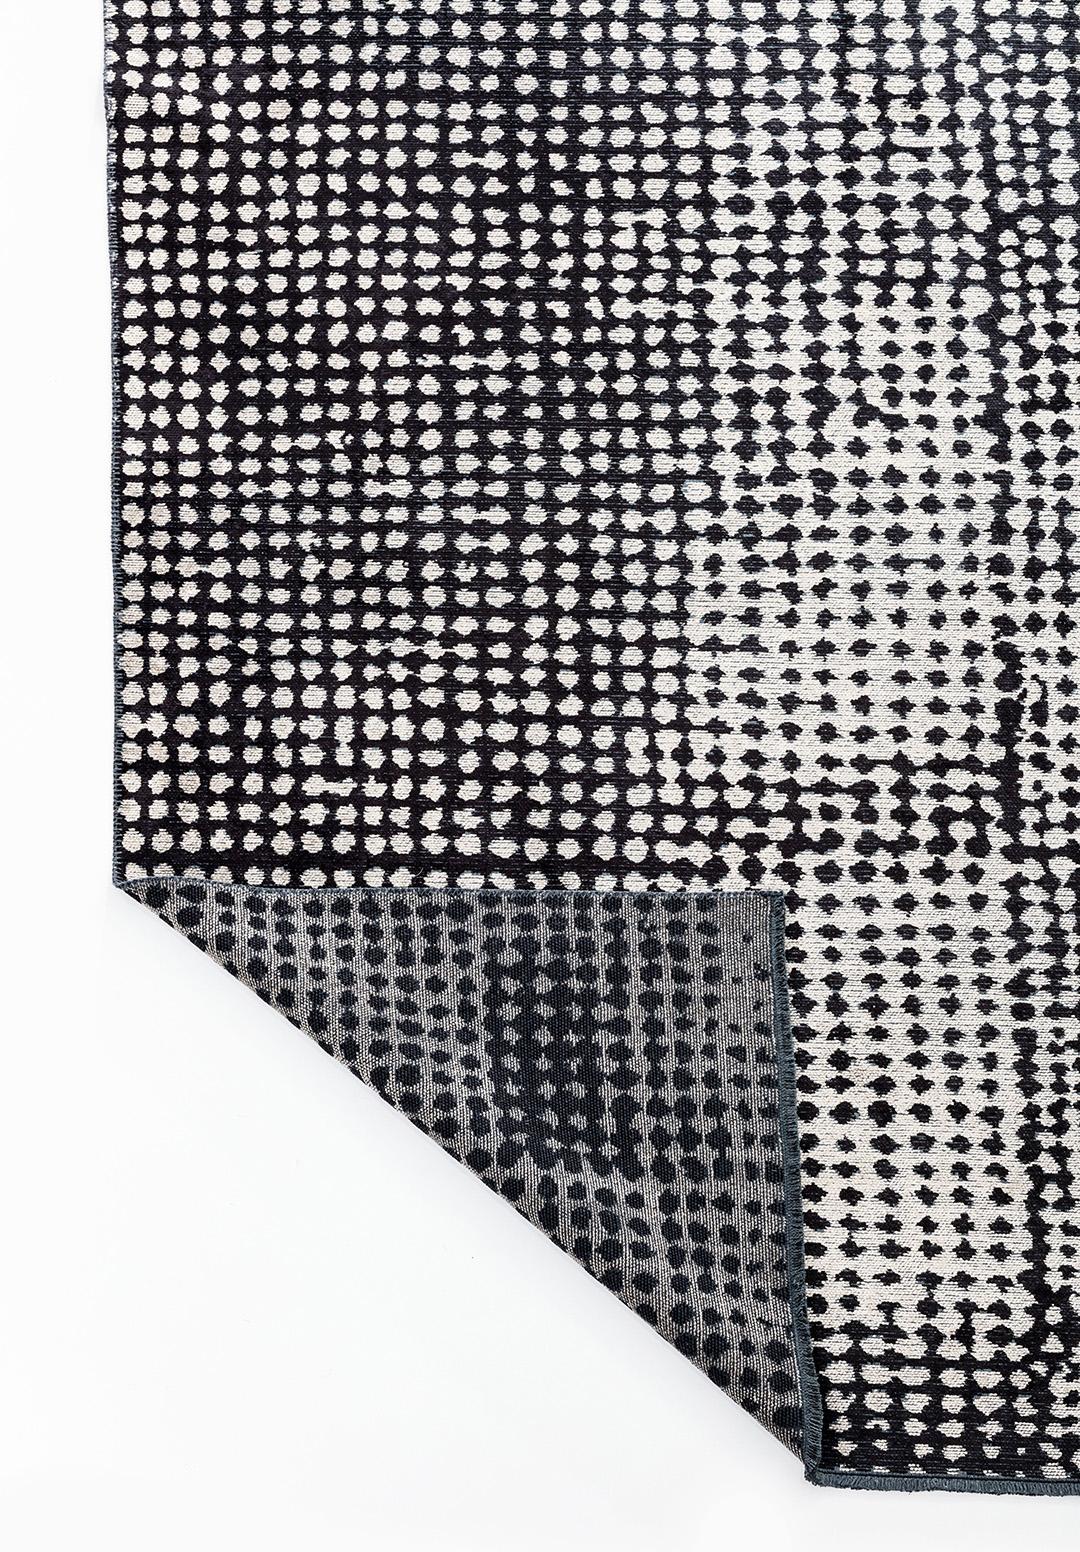 Postmoderne Tapis moderne marocain de style berbère noir et argenté abstrait, en stock en vente